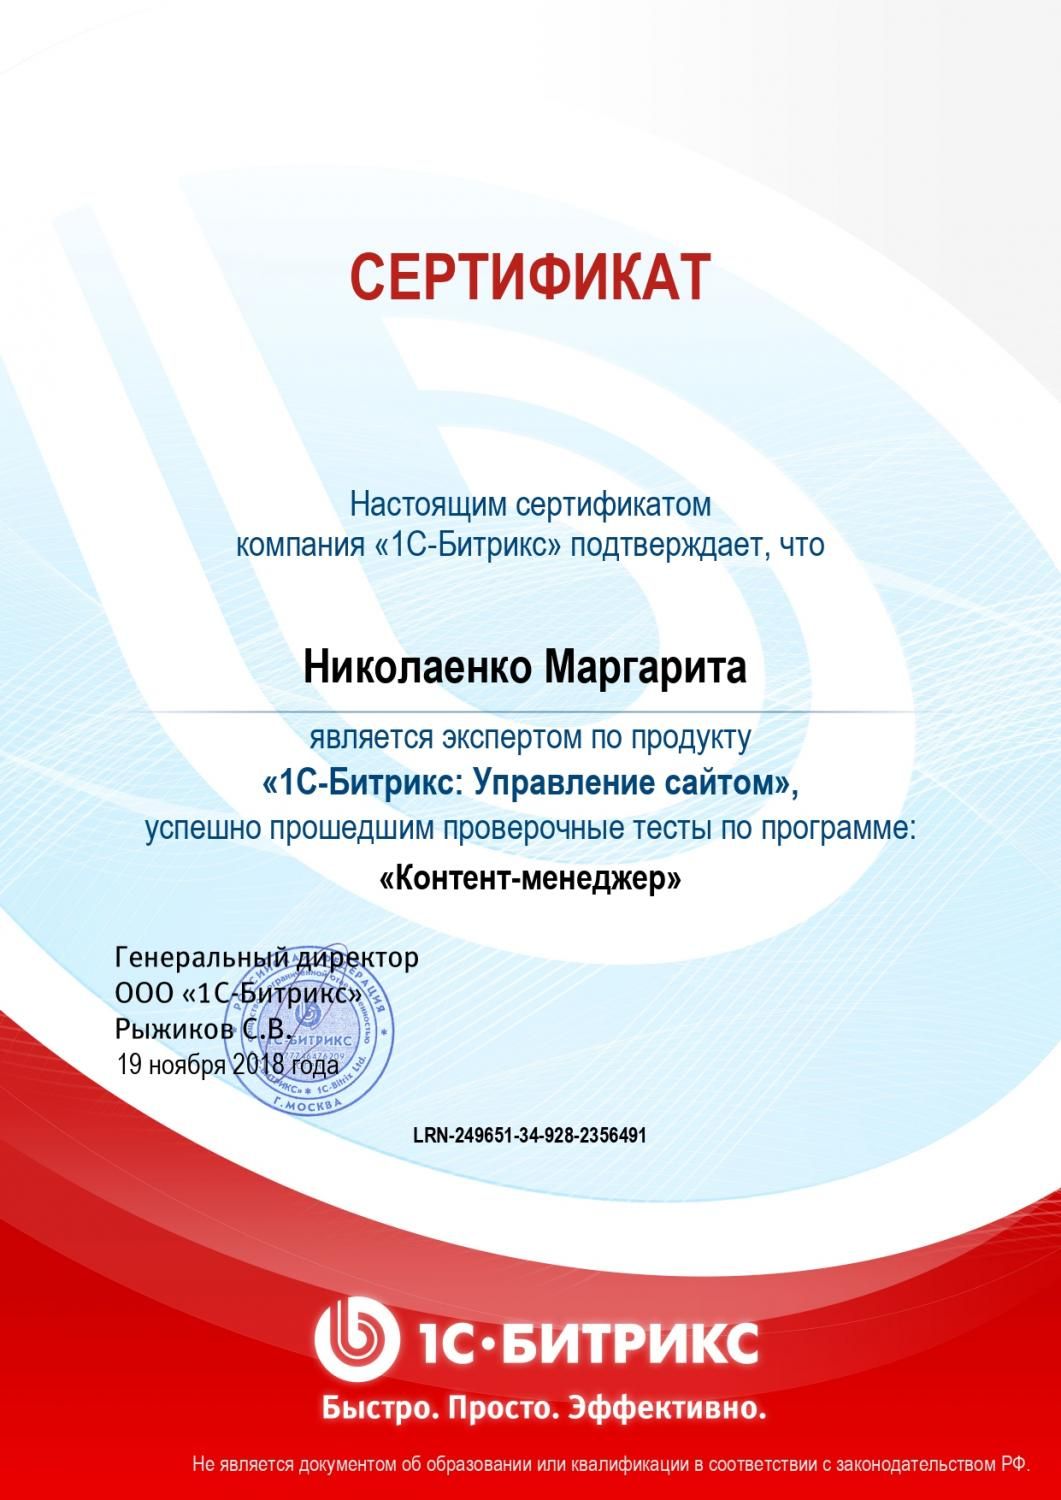 Сертификат эксперта по программе "Контент-менеджер" - Николаенко М. в Нижневартовска